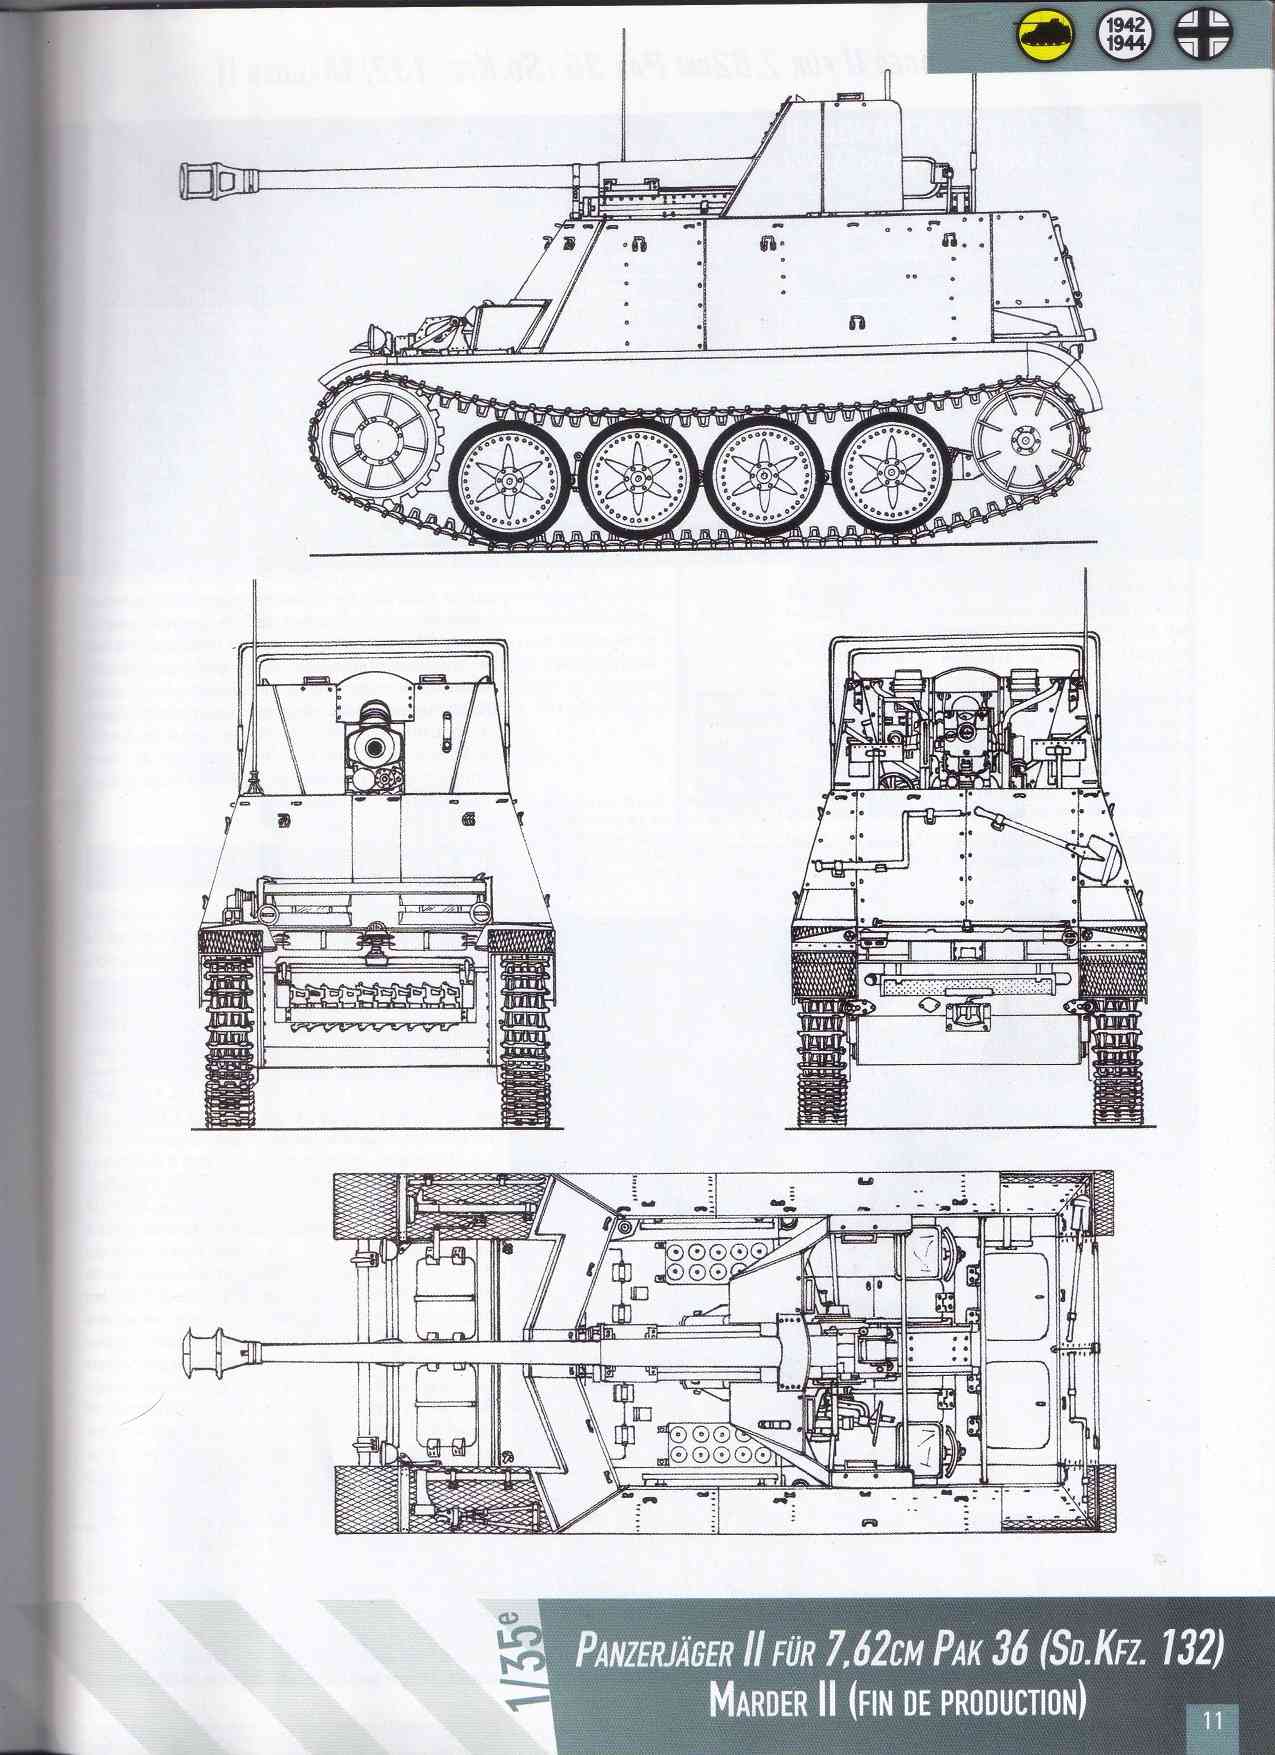 Le "Panzerjäger II für 7,62cm Pak 36 Marder II" Marder16